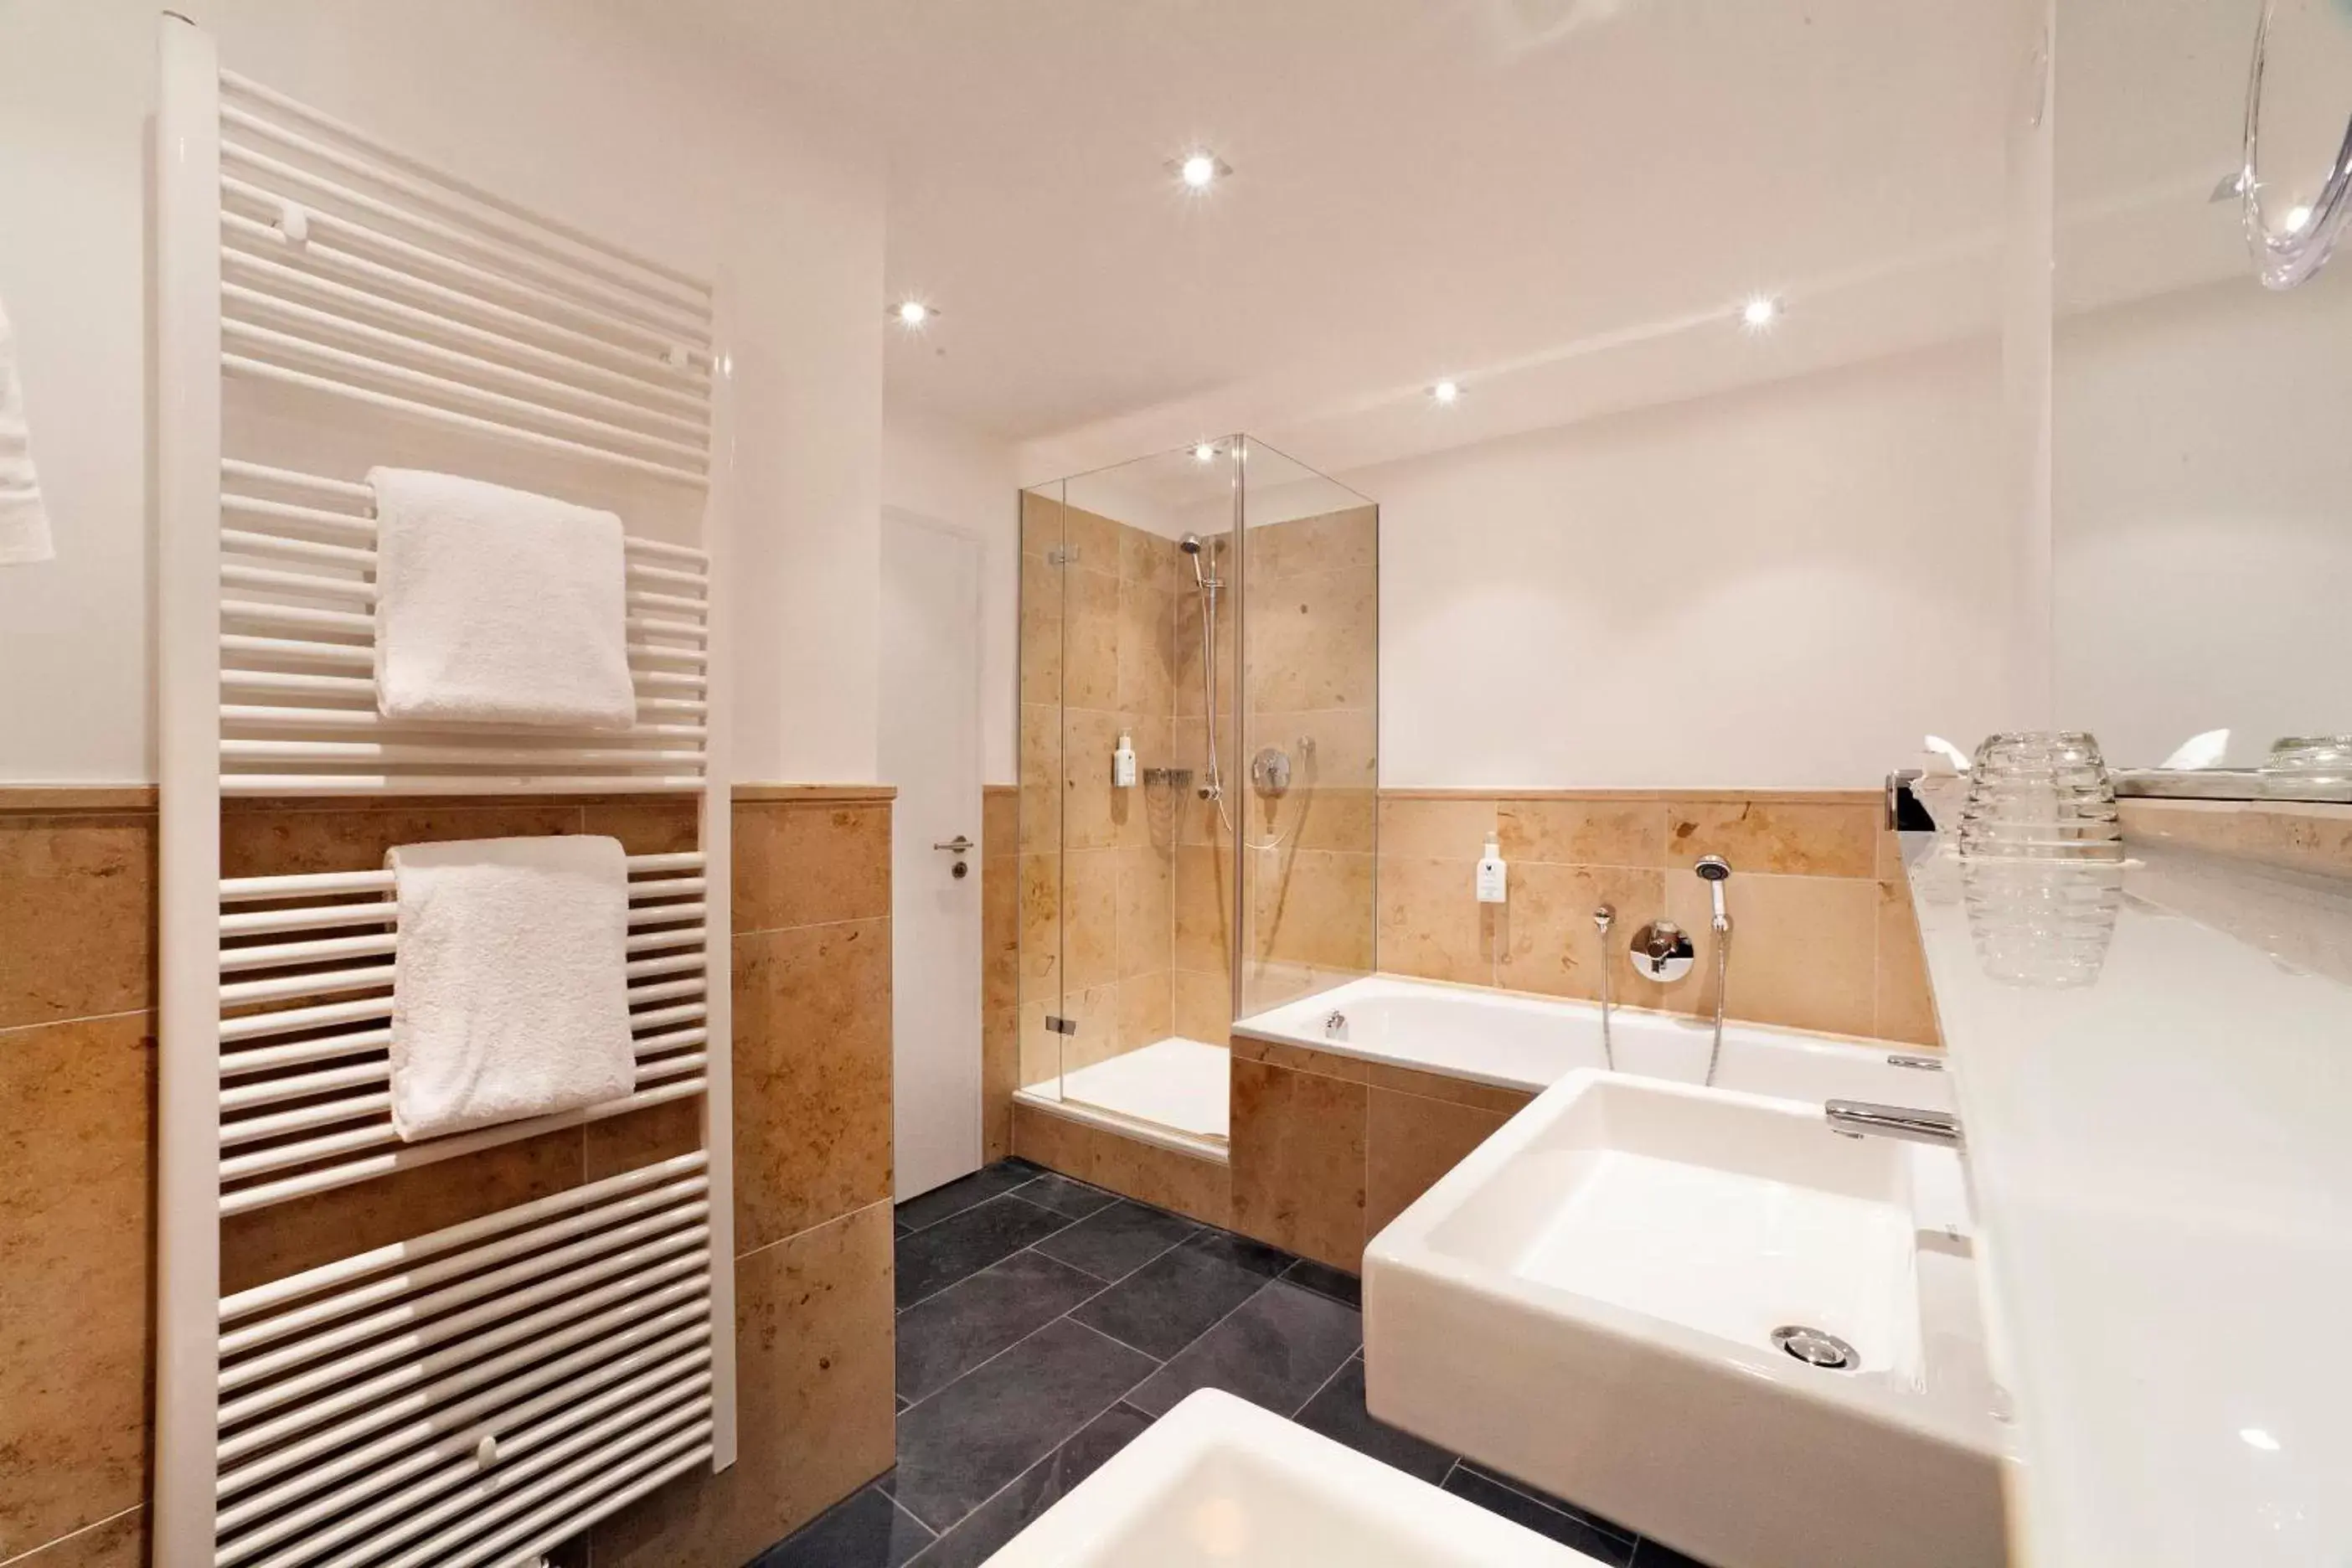 Shower, Bathroom in AKZENT Brauerei Hotel Hirsch